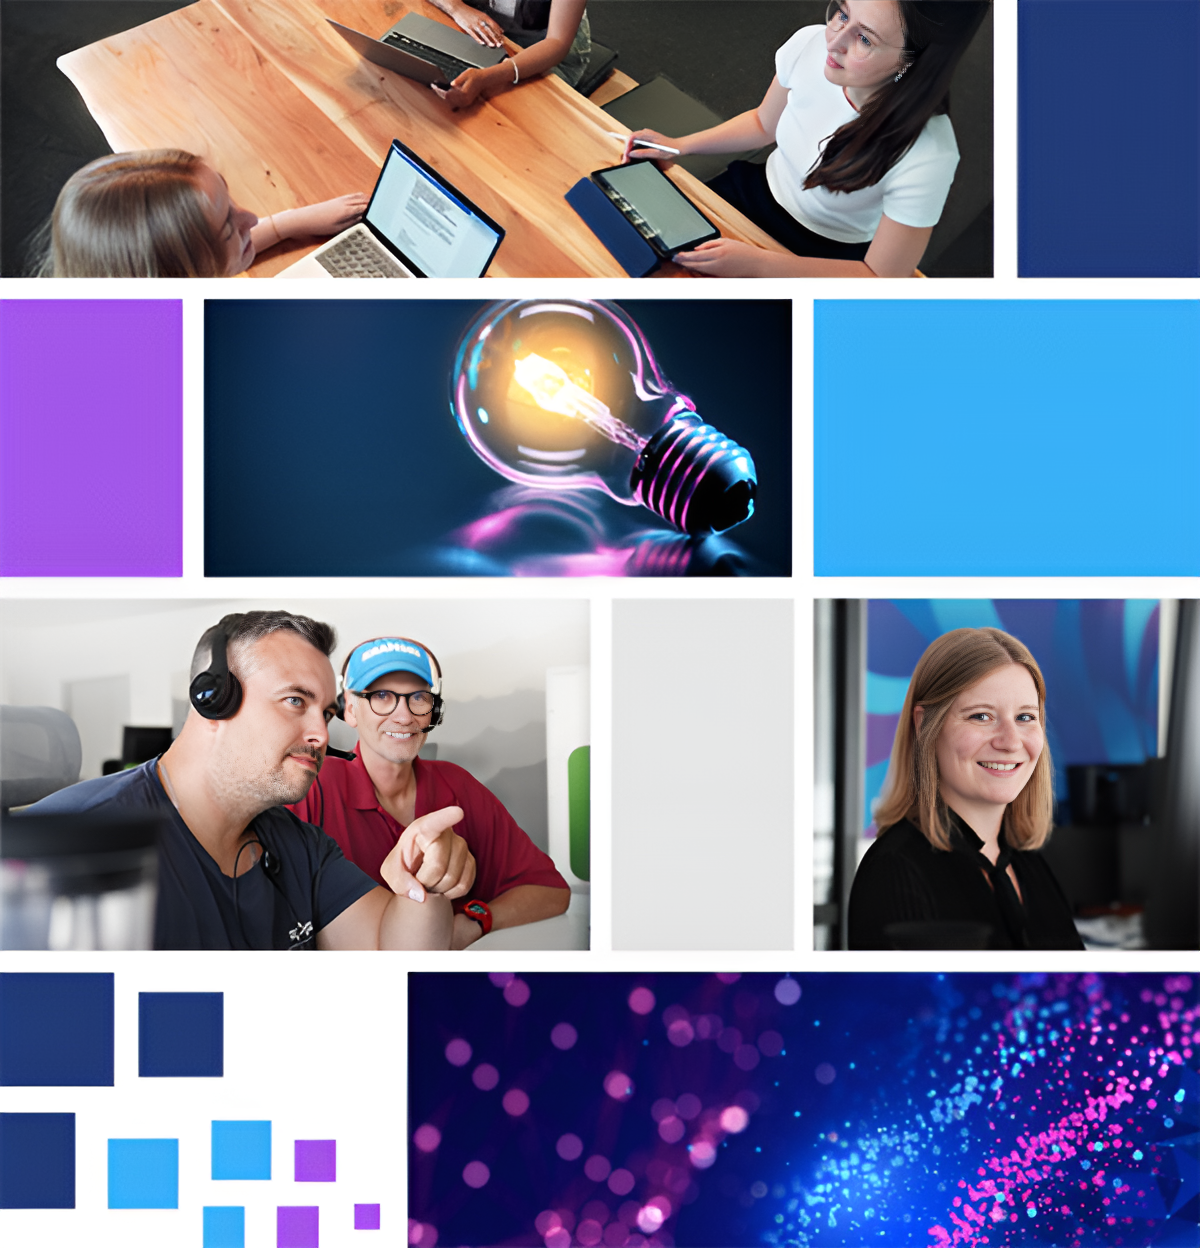 Collage, die verschiedene Mitarbeiterinnen und Mitarbeiter von PropertyExpert zeigt (unter anderem Emilia Heitmann und Lisa Witzel), dazwischen blaue und lila Bilder